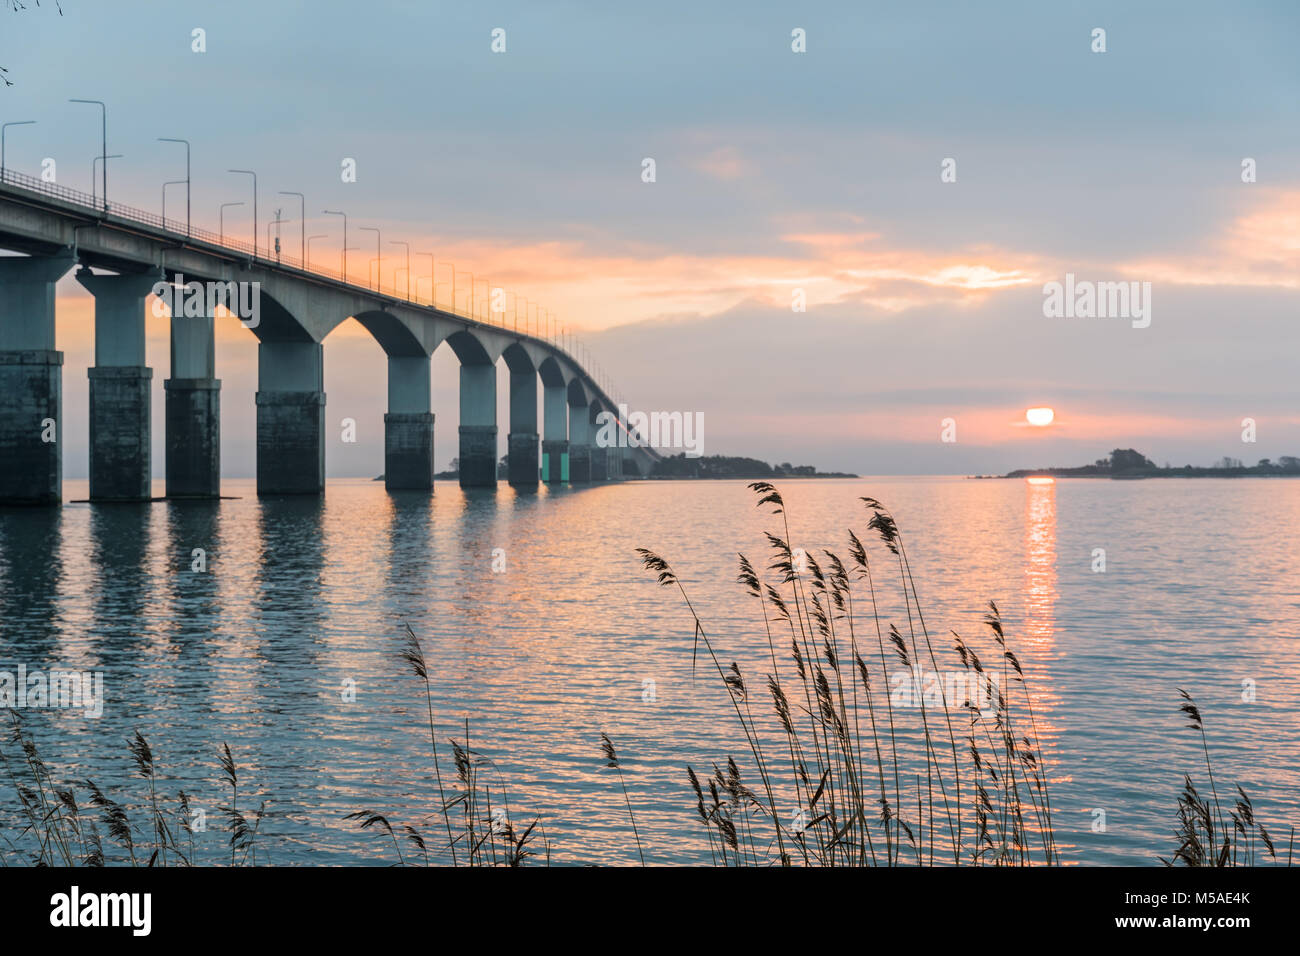 Amanecer por el puente de Öland, conecta la isla sueca de Öland en el Mar Báltico, Suecia continental Foto de stock